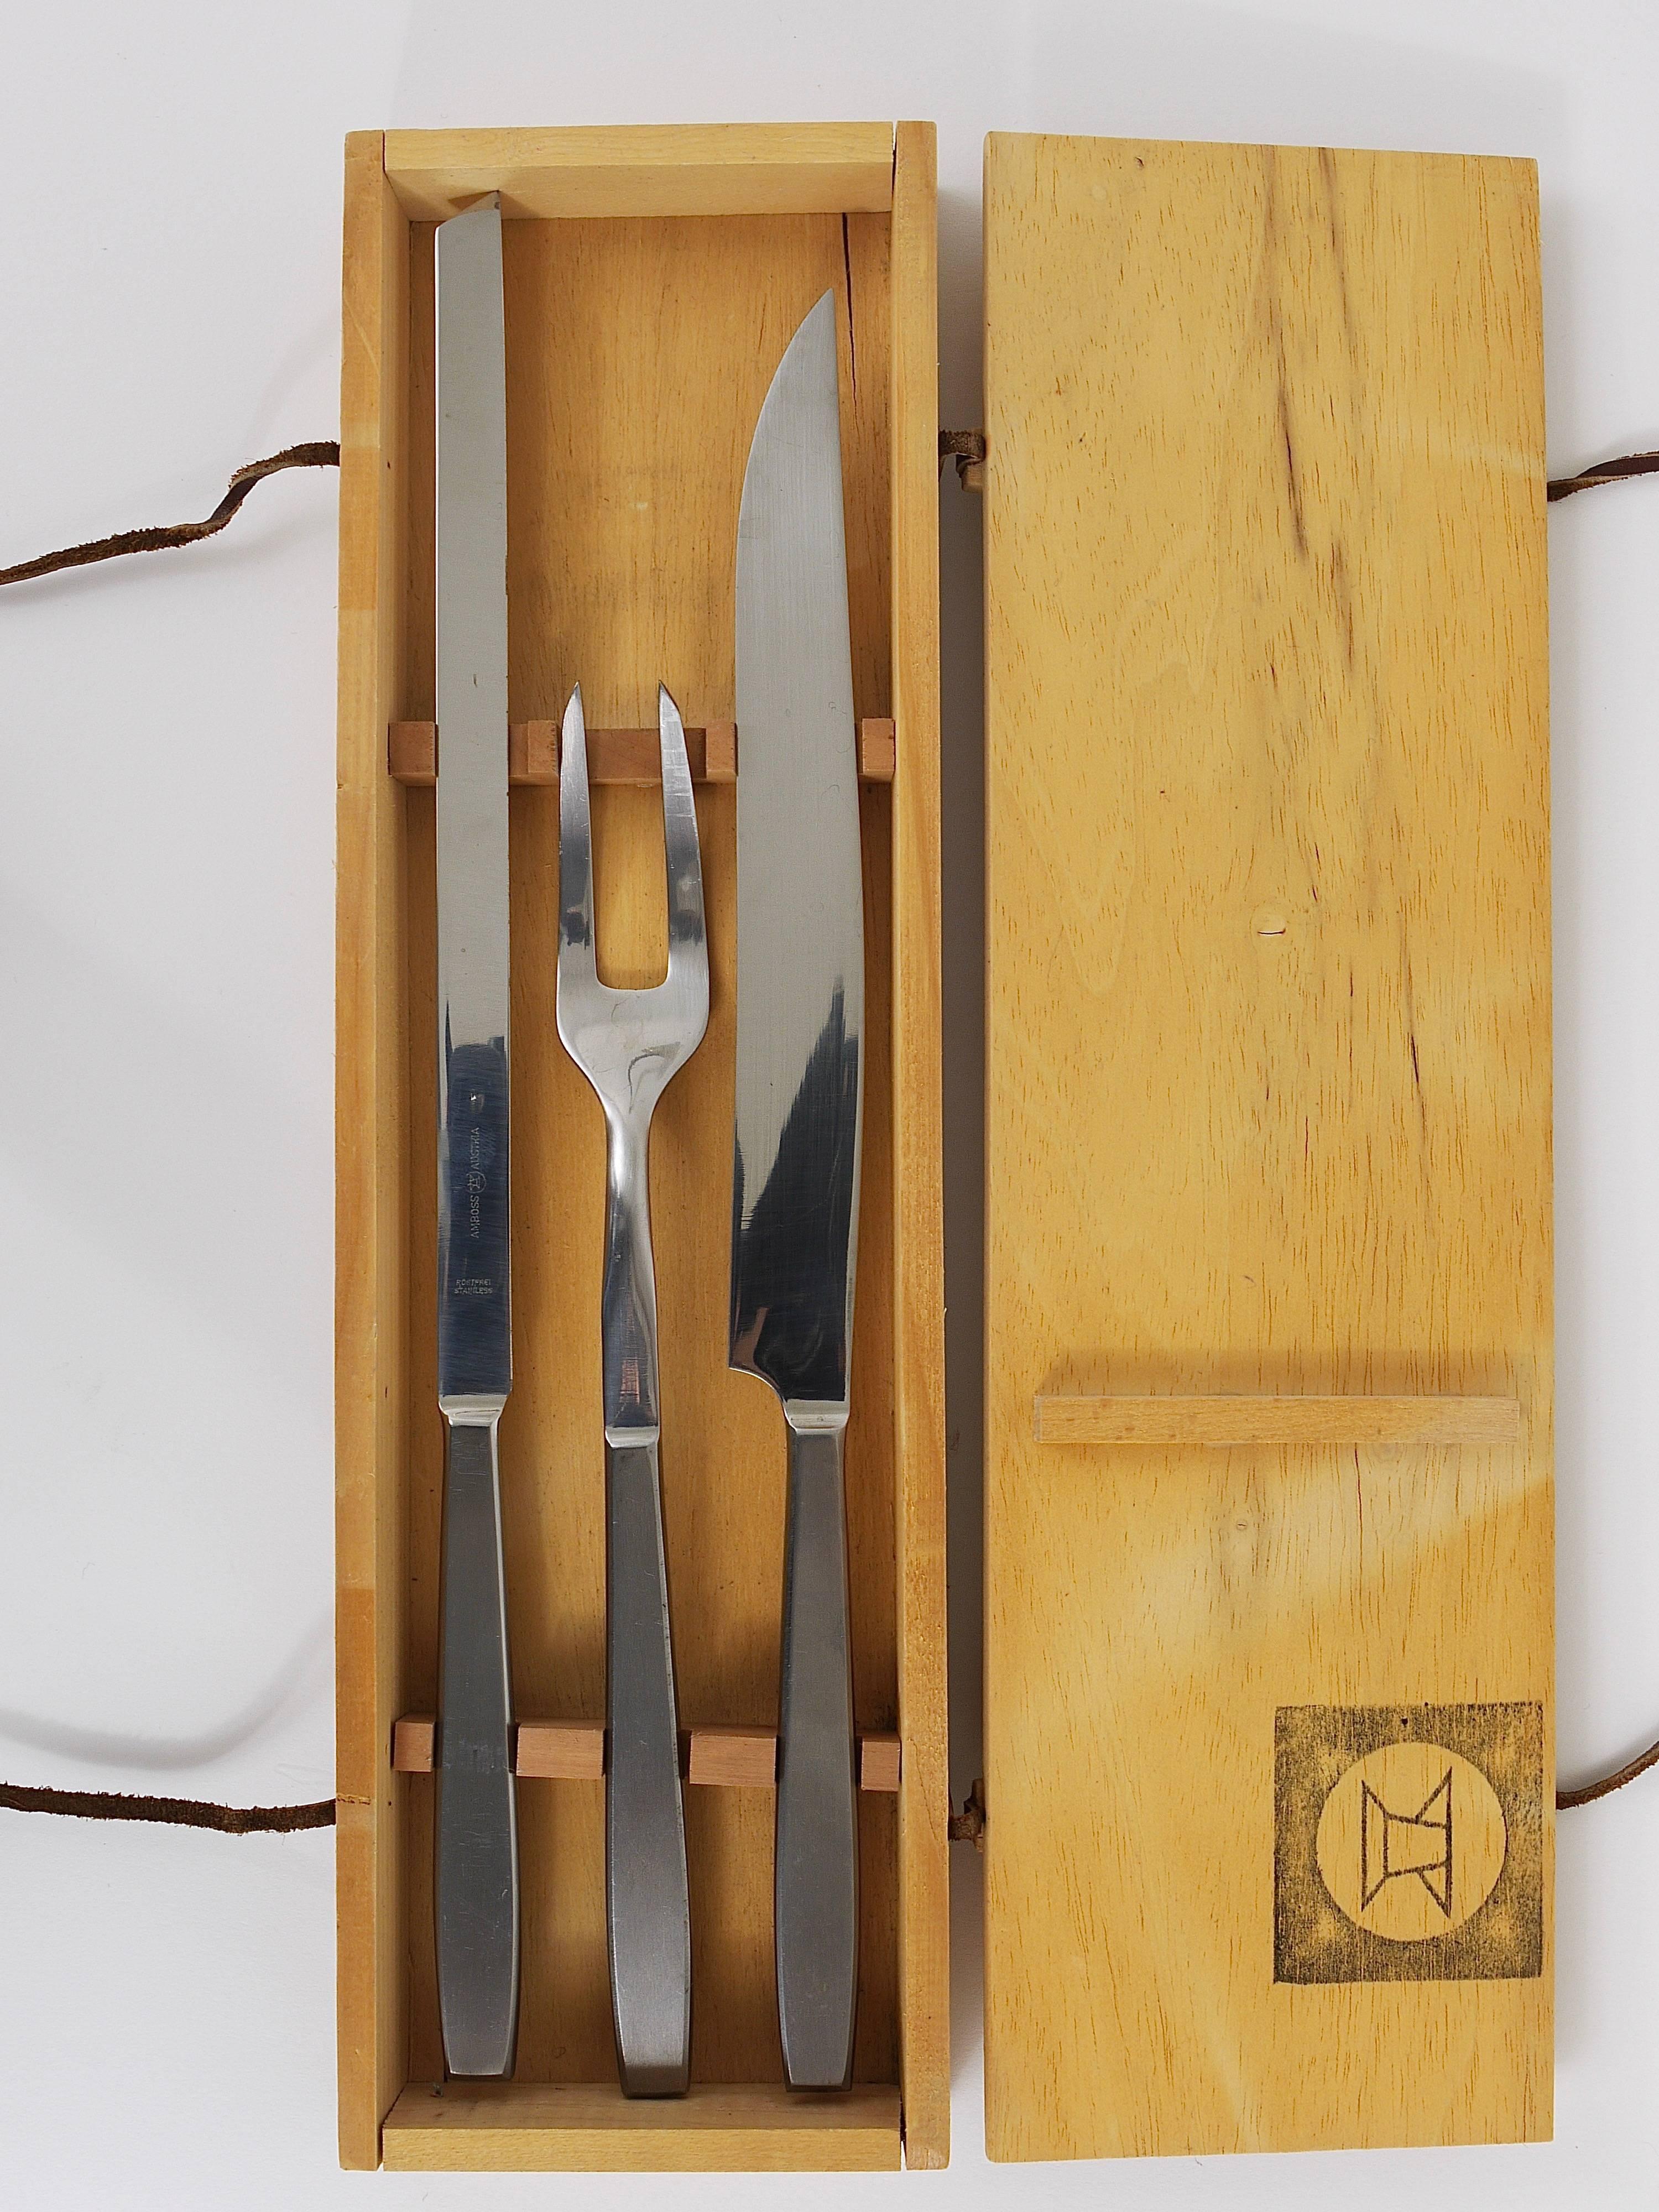 Magnifique set à découper autrichien du milieu du siècle dernier, composé d'un couteau à découper, d'un couteau à viande et d'une fourchette, dans son coffret en bois d'origine, fait à la main et primé. Issue de la série 2050, conçue par Helmut